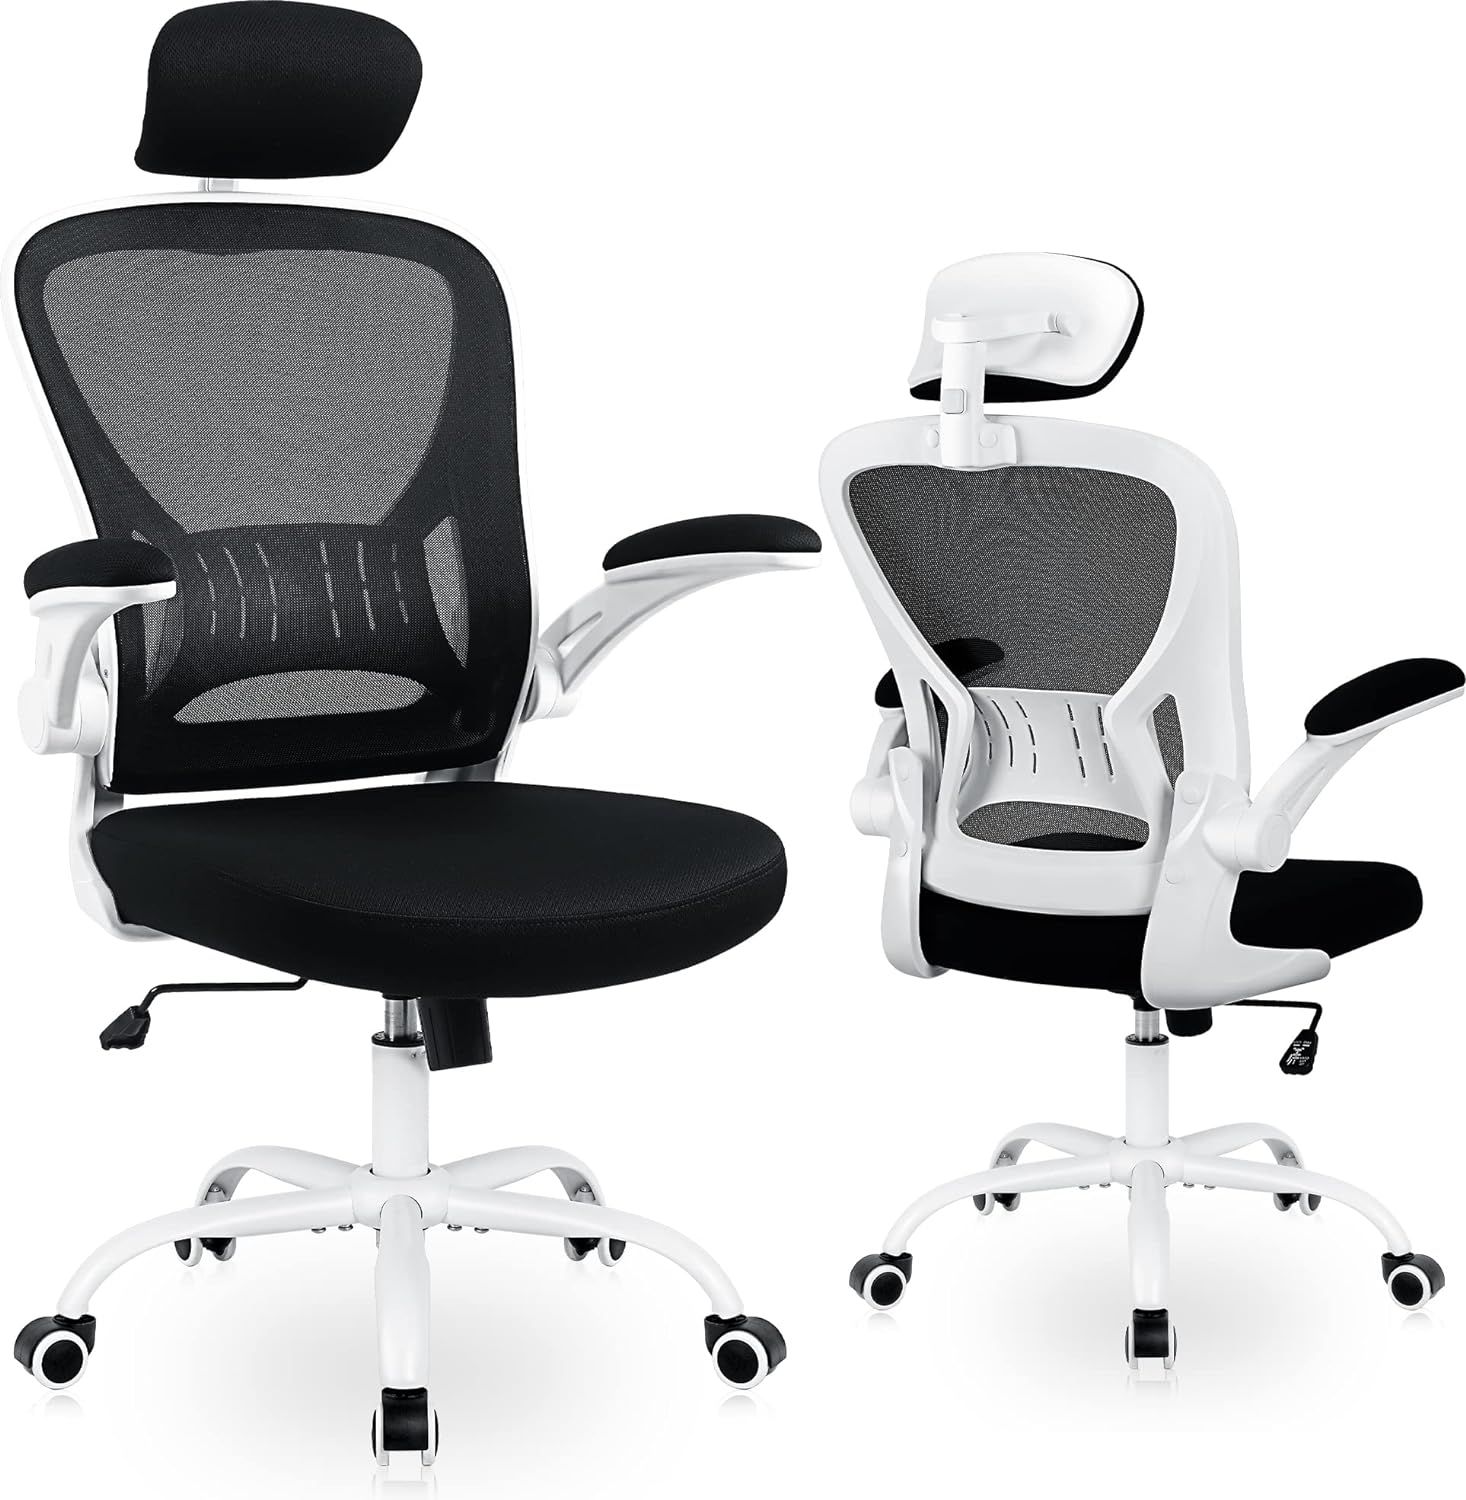 Ralex-Chair Office Chair